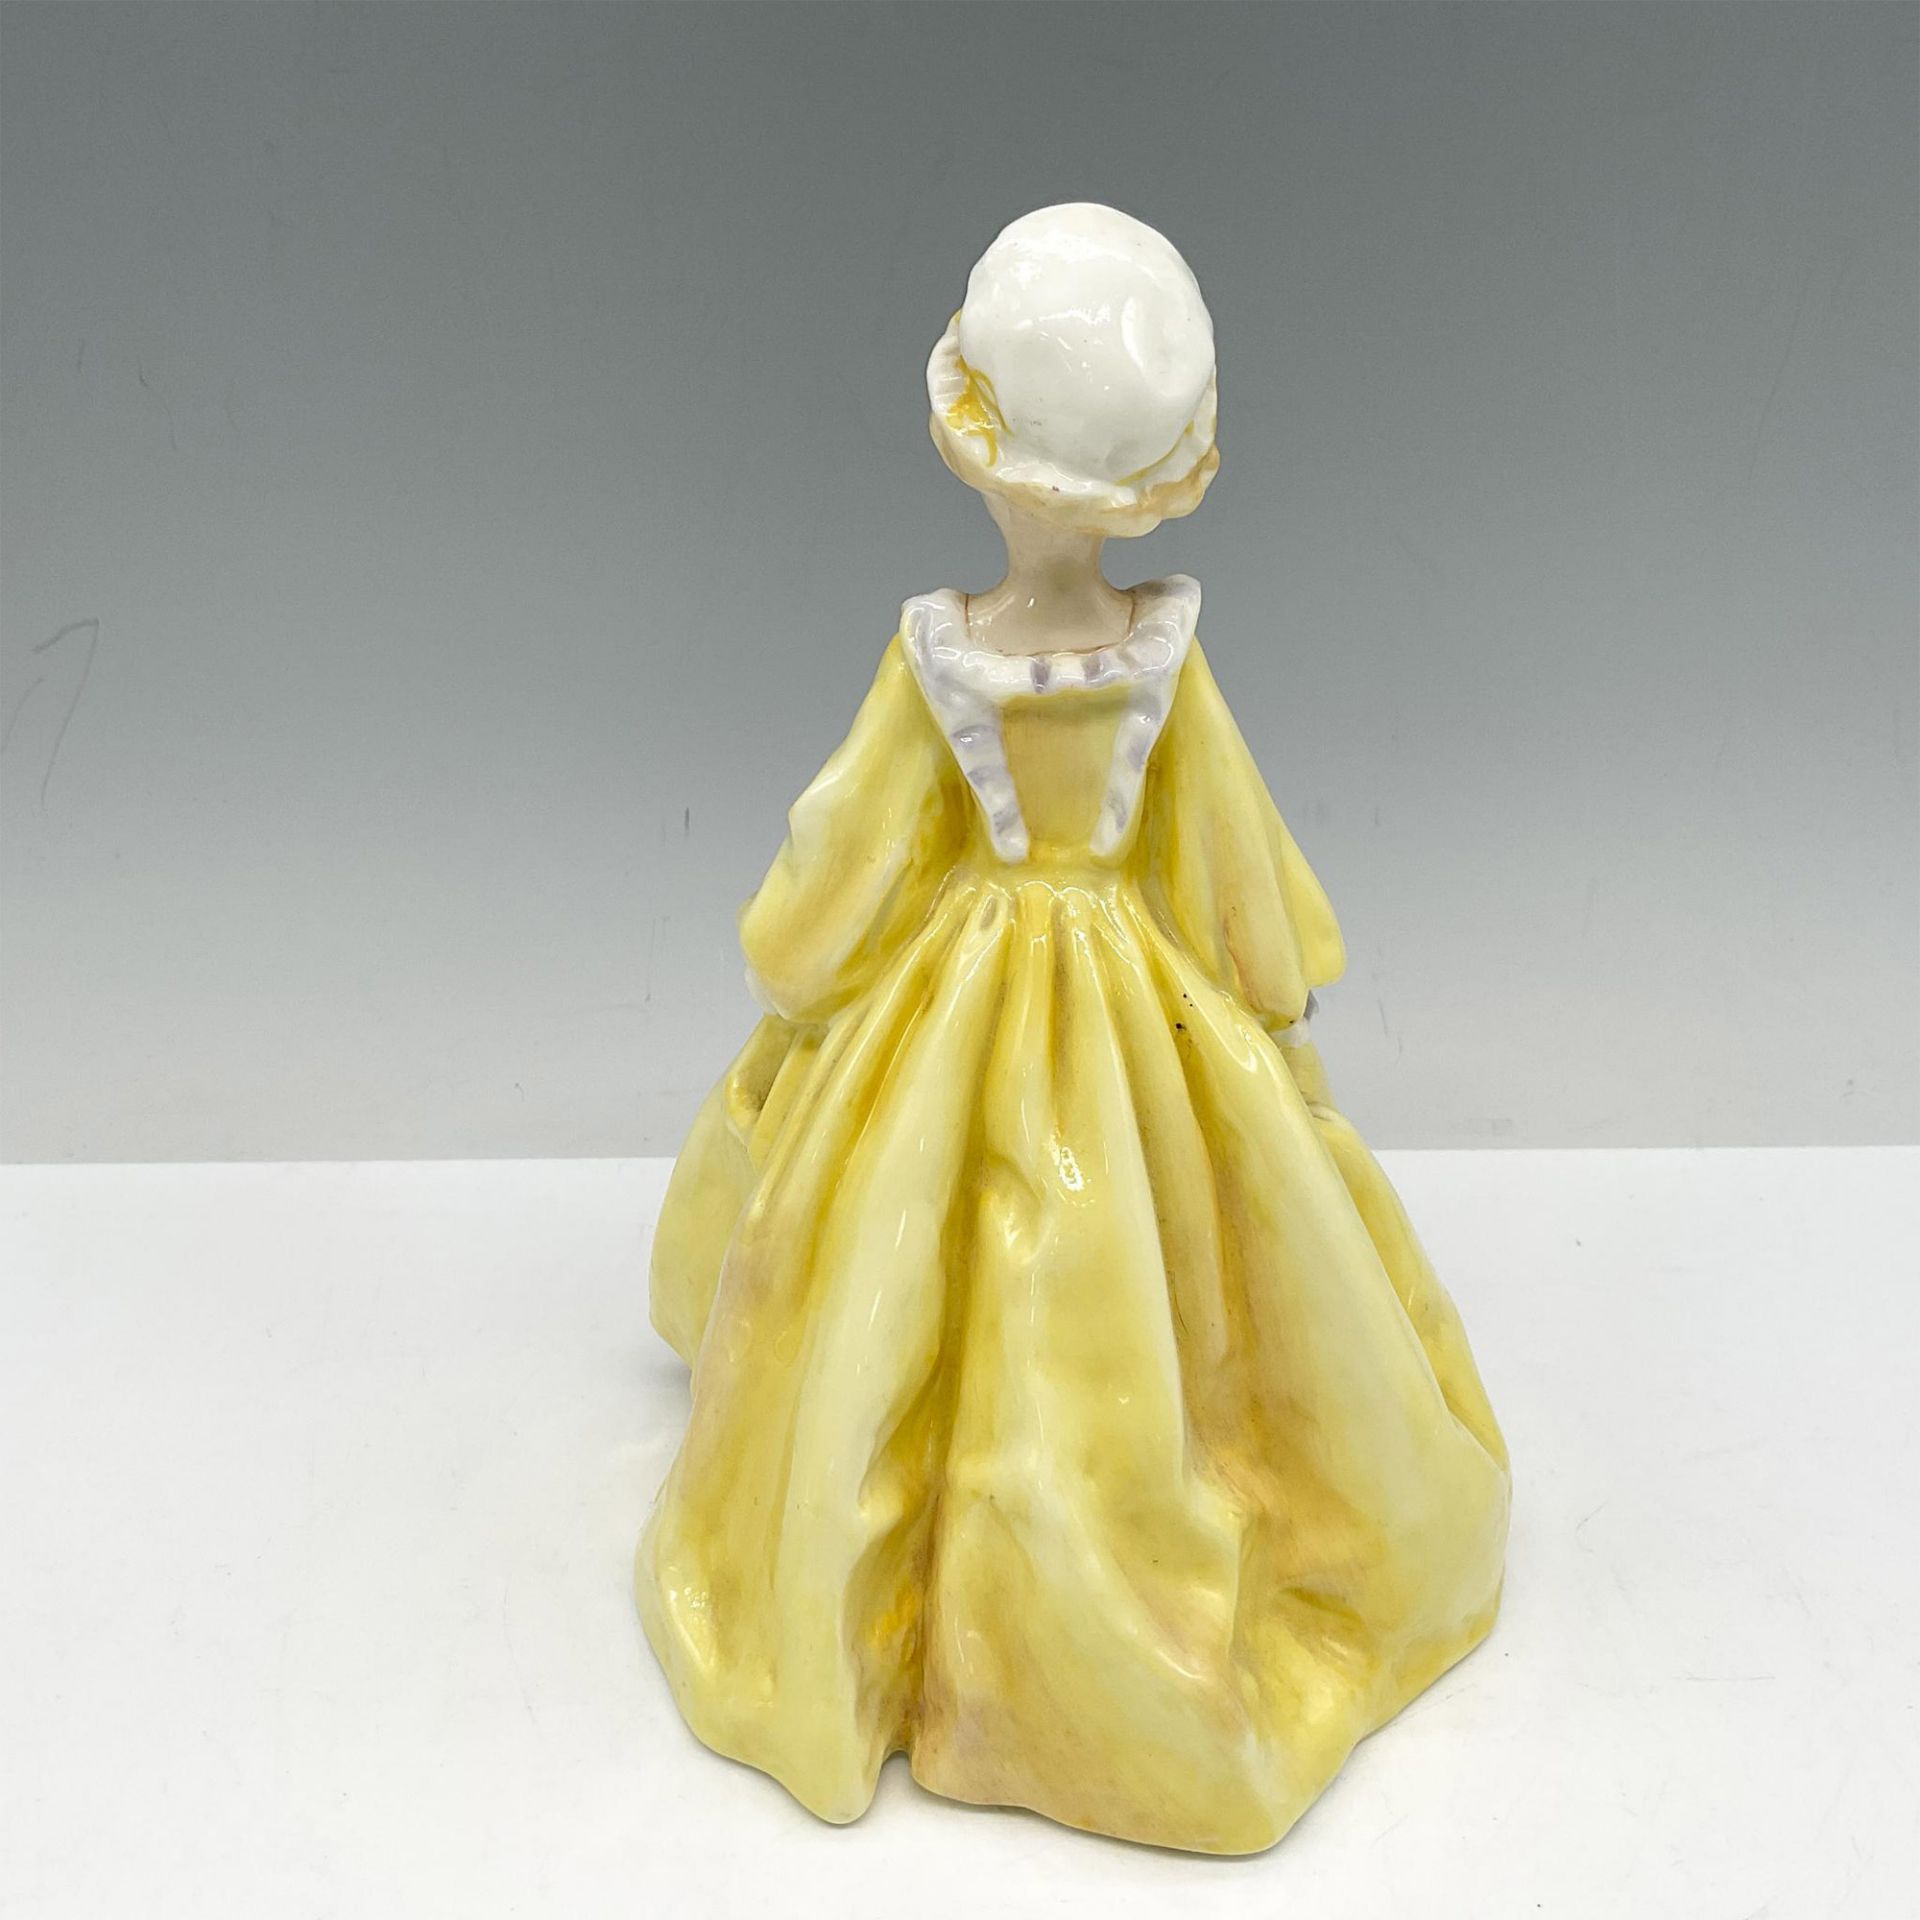 Royal Worcester Porcelain Figurine, Grandmother's Dress - Image 2 of 3